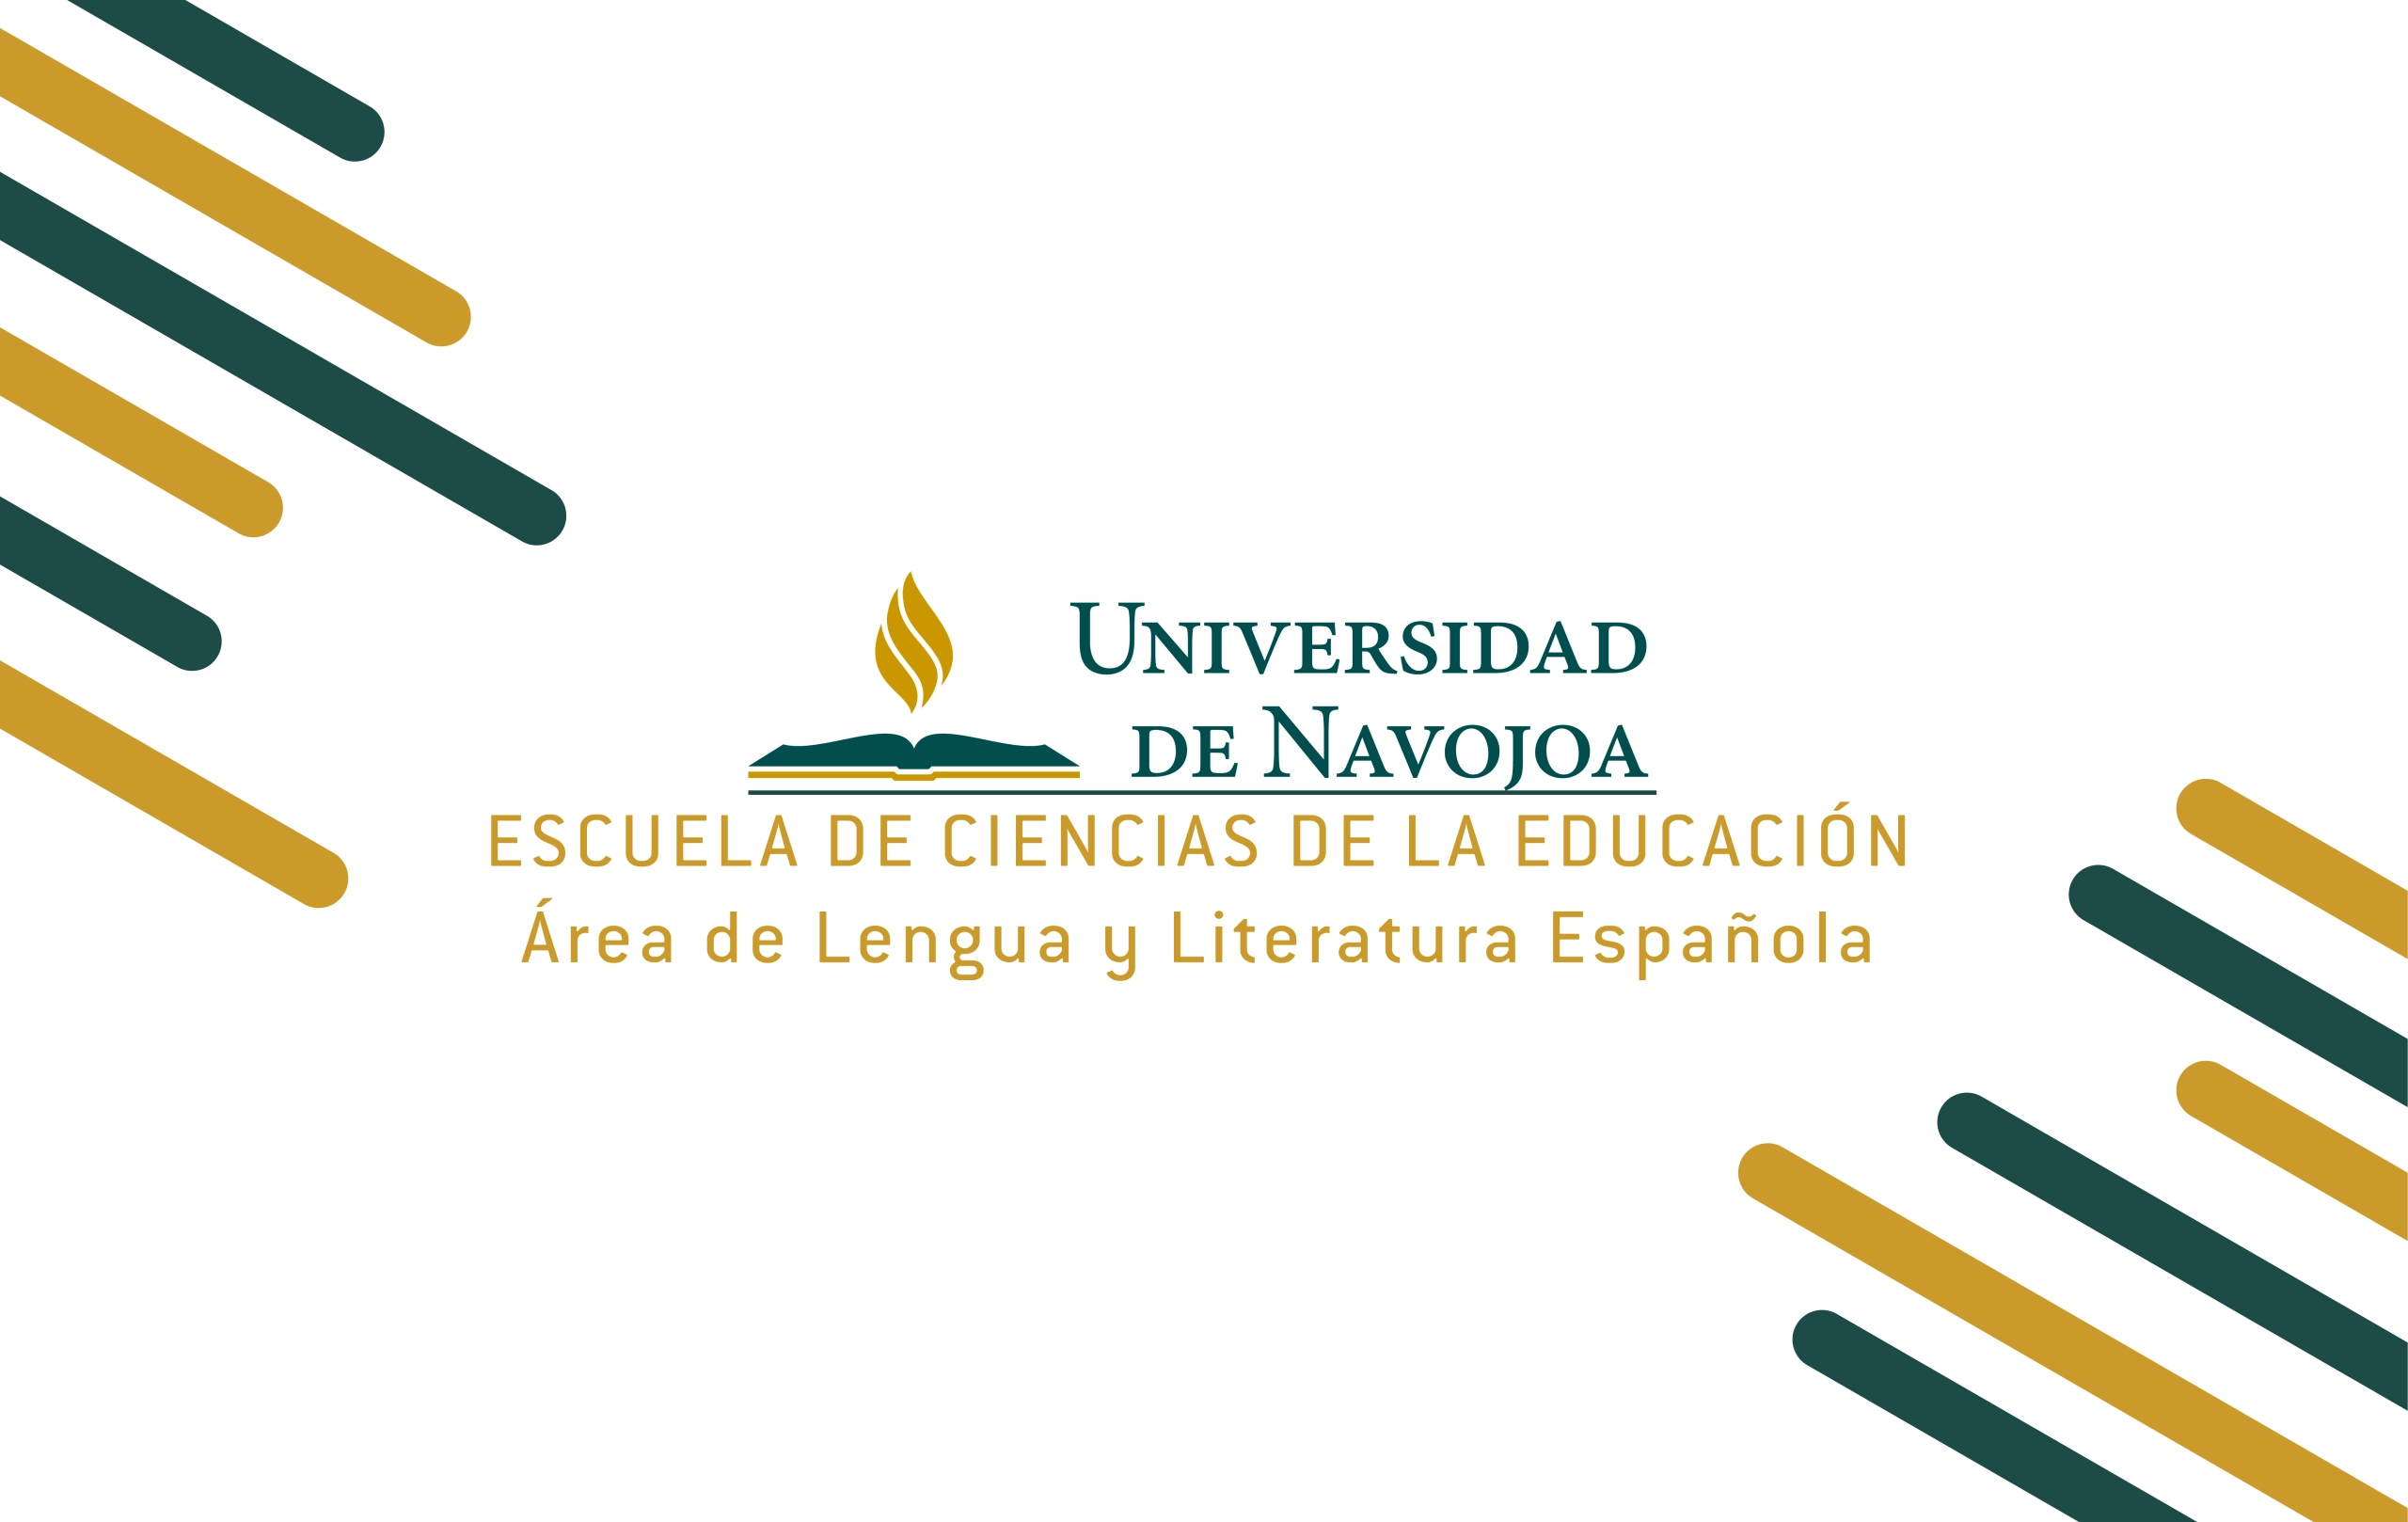 Escuela de Ciencias de la Educación - Área de Lengua y Literatura Española